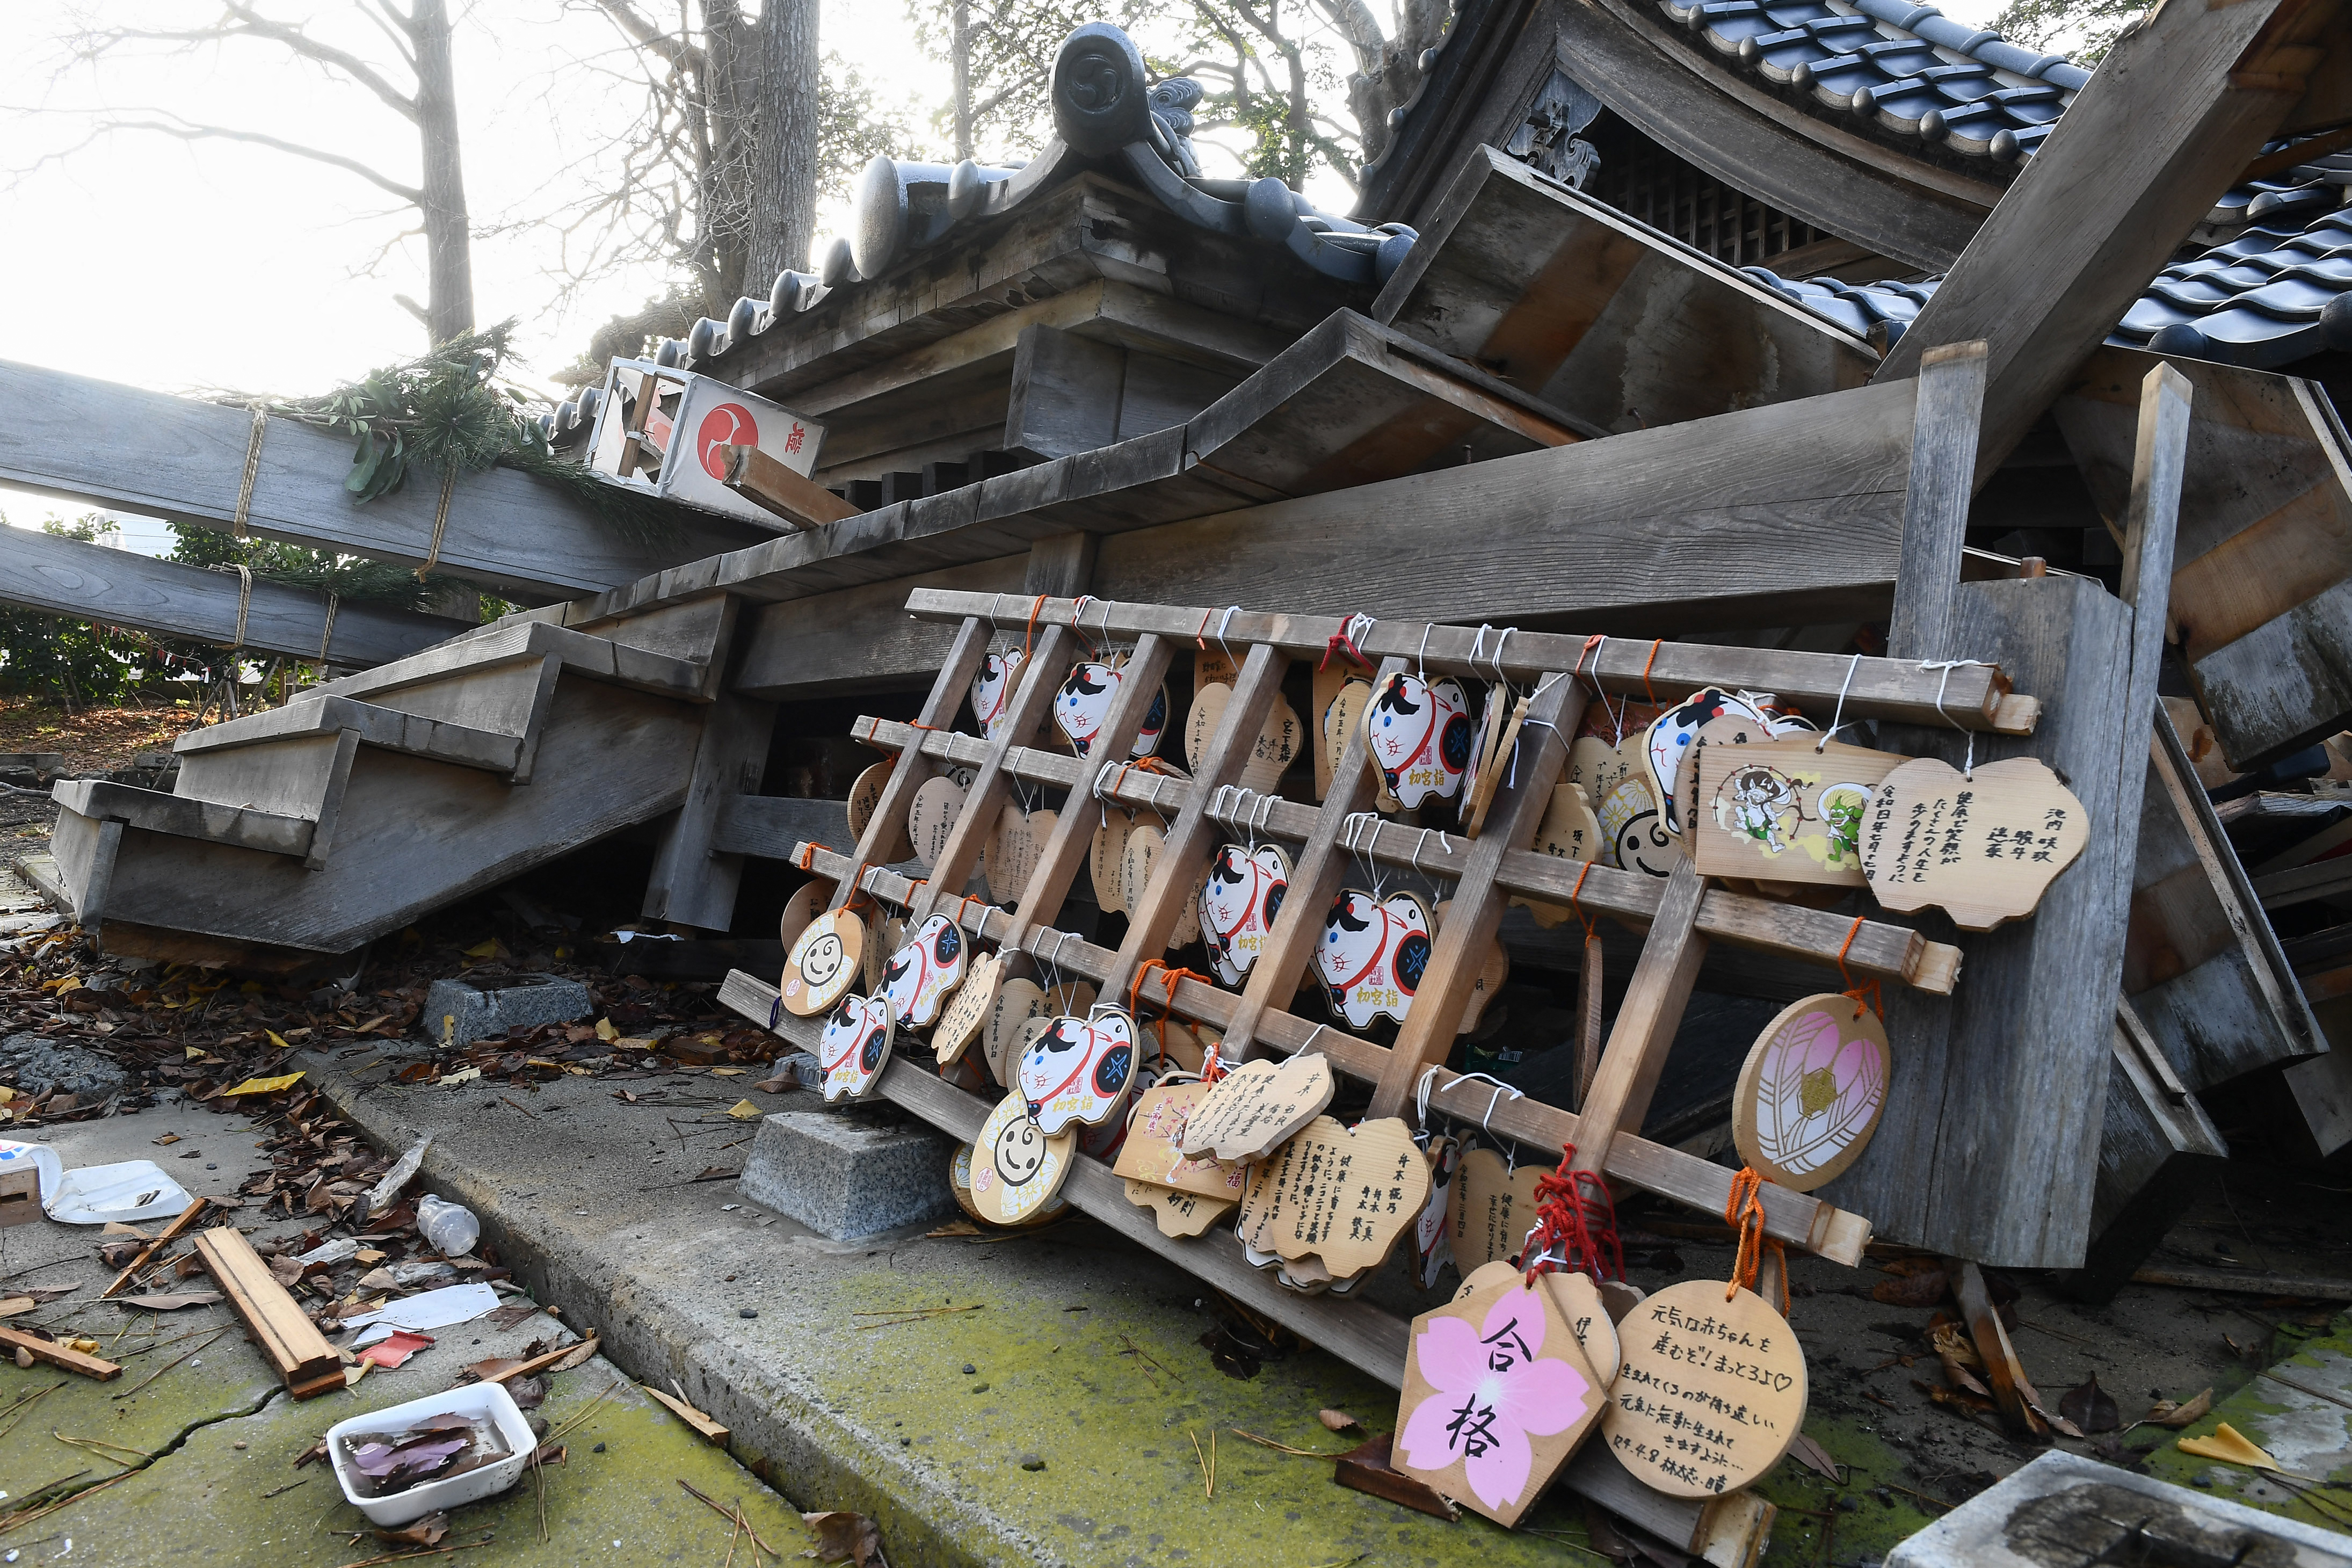 日本地震死亡人数升至126人仍有210人失踪| 能登半岛| 石川县| 大纪元